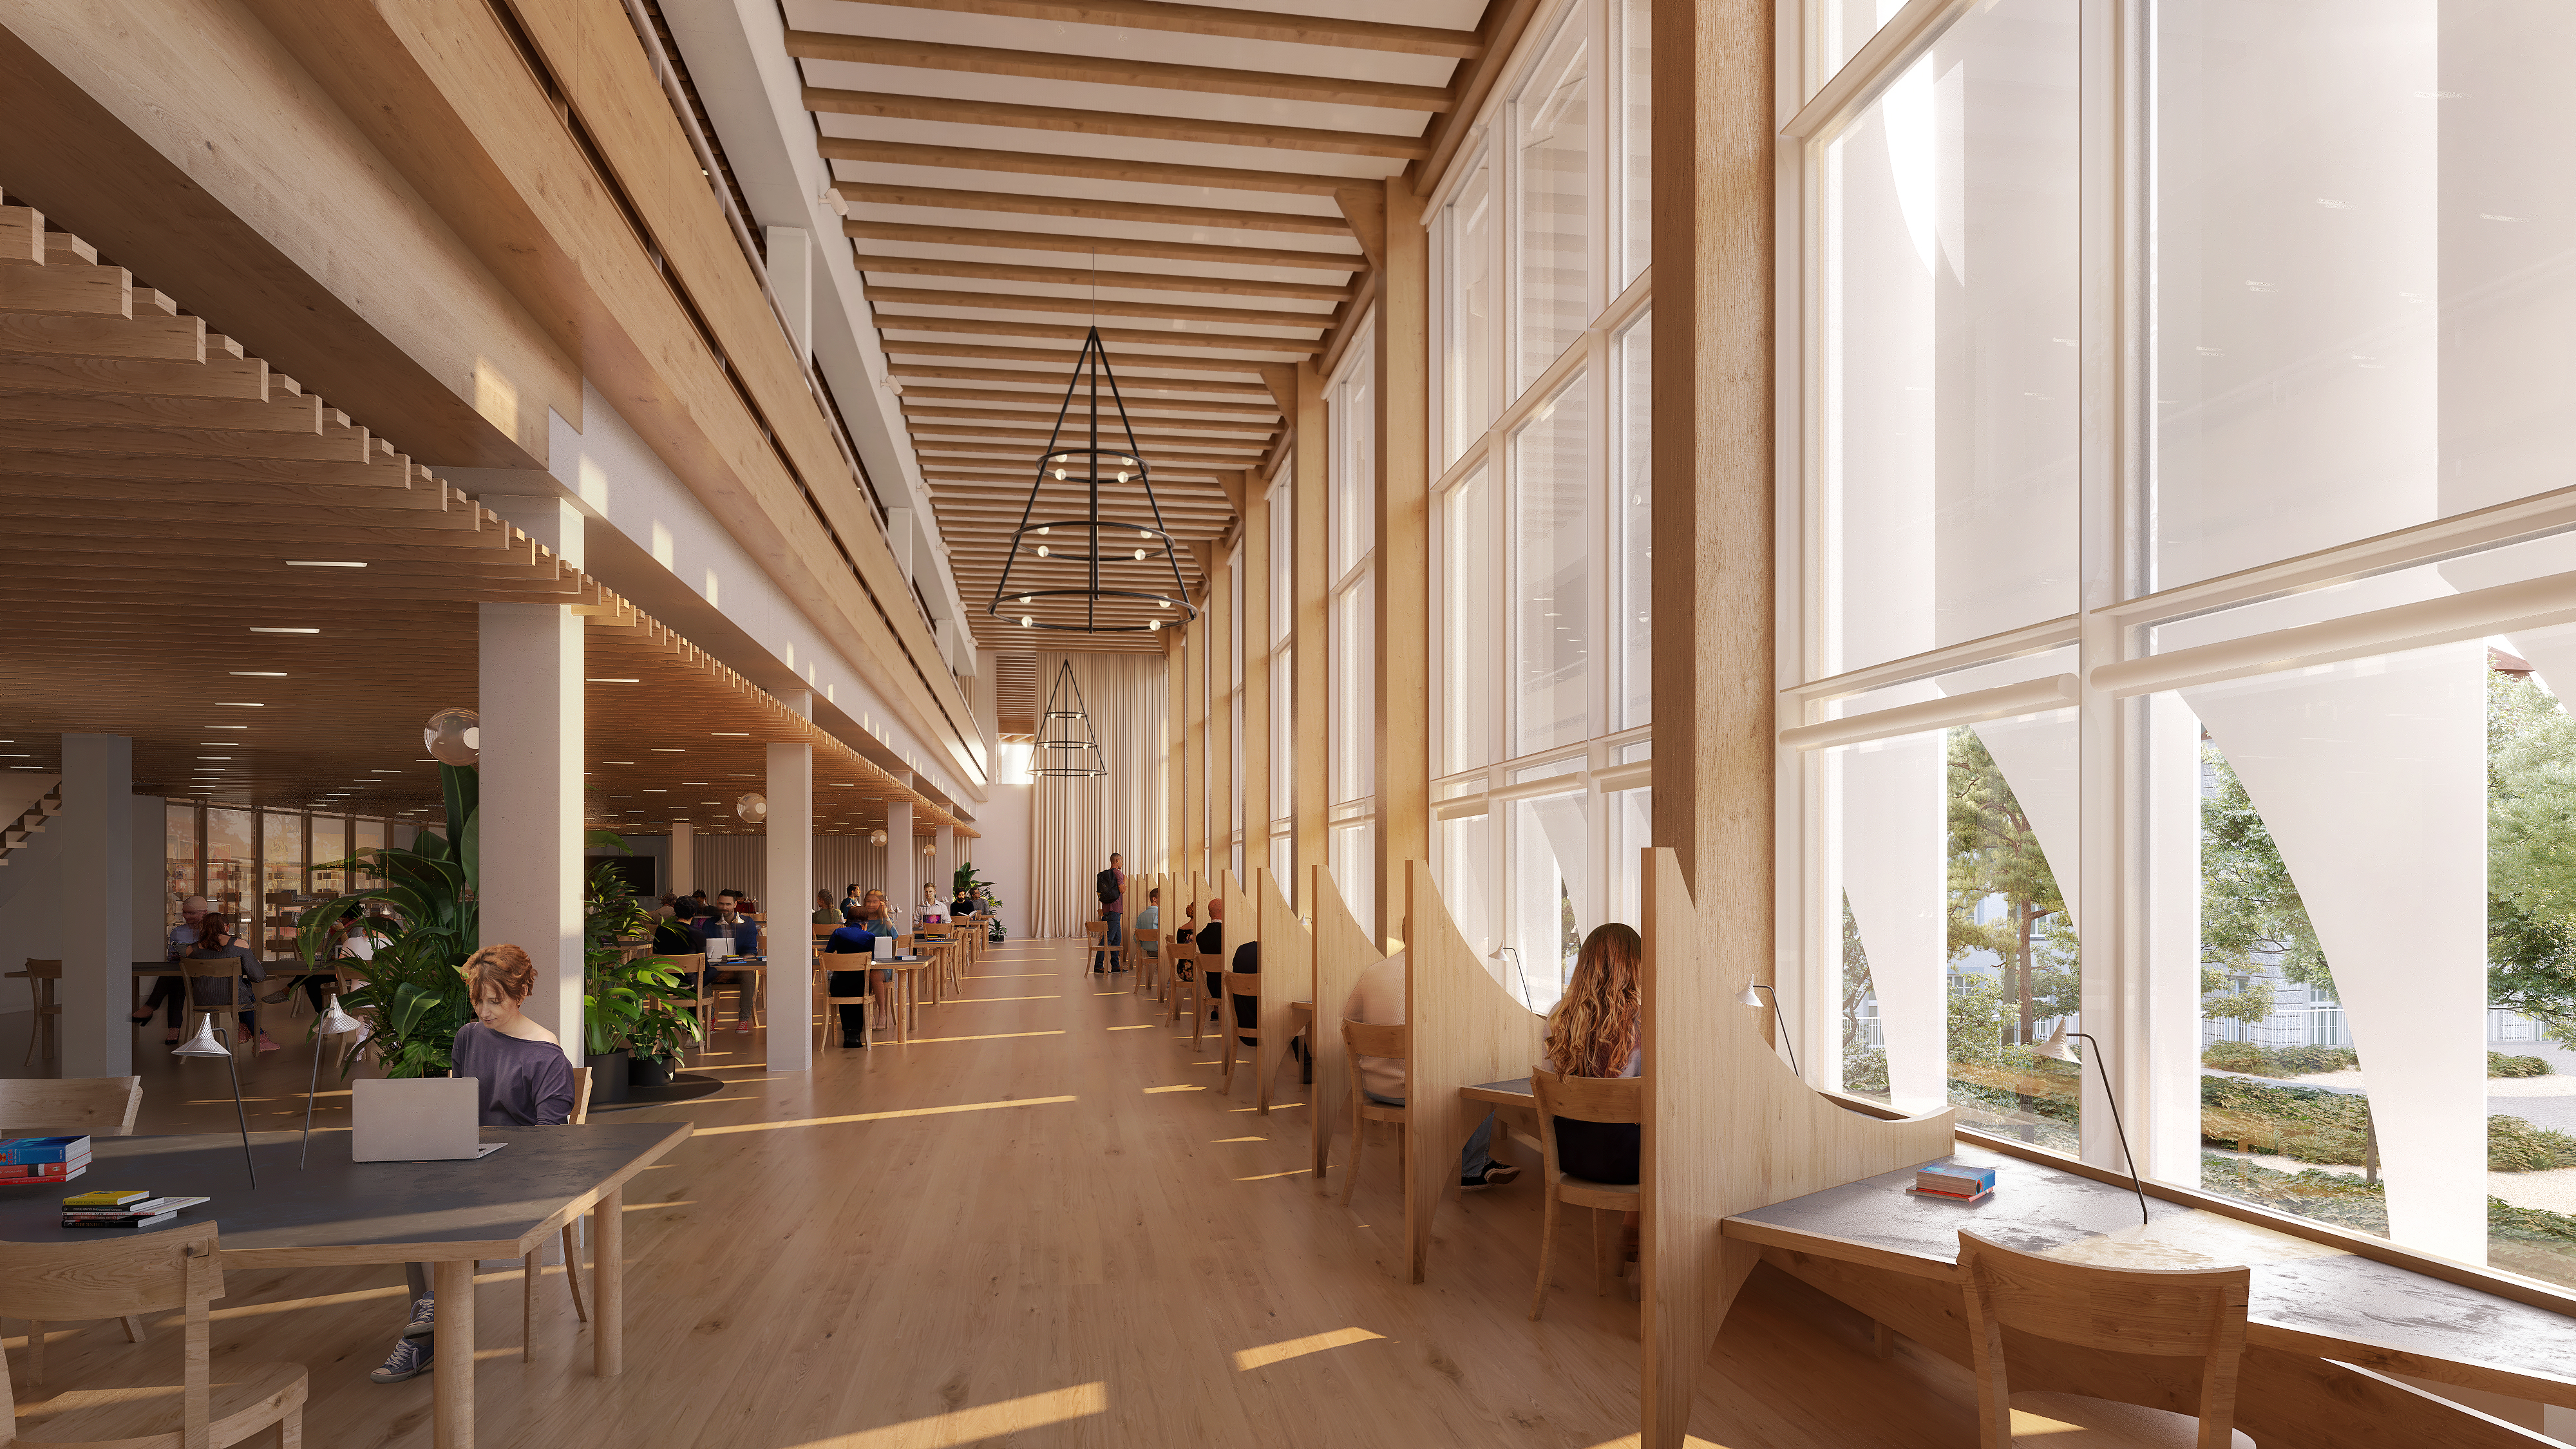 Der zweigeschossige Lesesaal in der Bibliothek bietet mehr als 300 Arbeitsplätze. (Bild: Herzog & de Meuron)